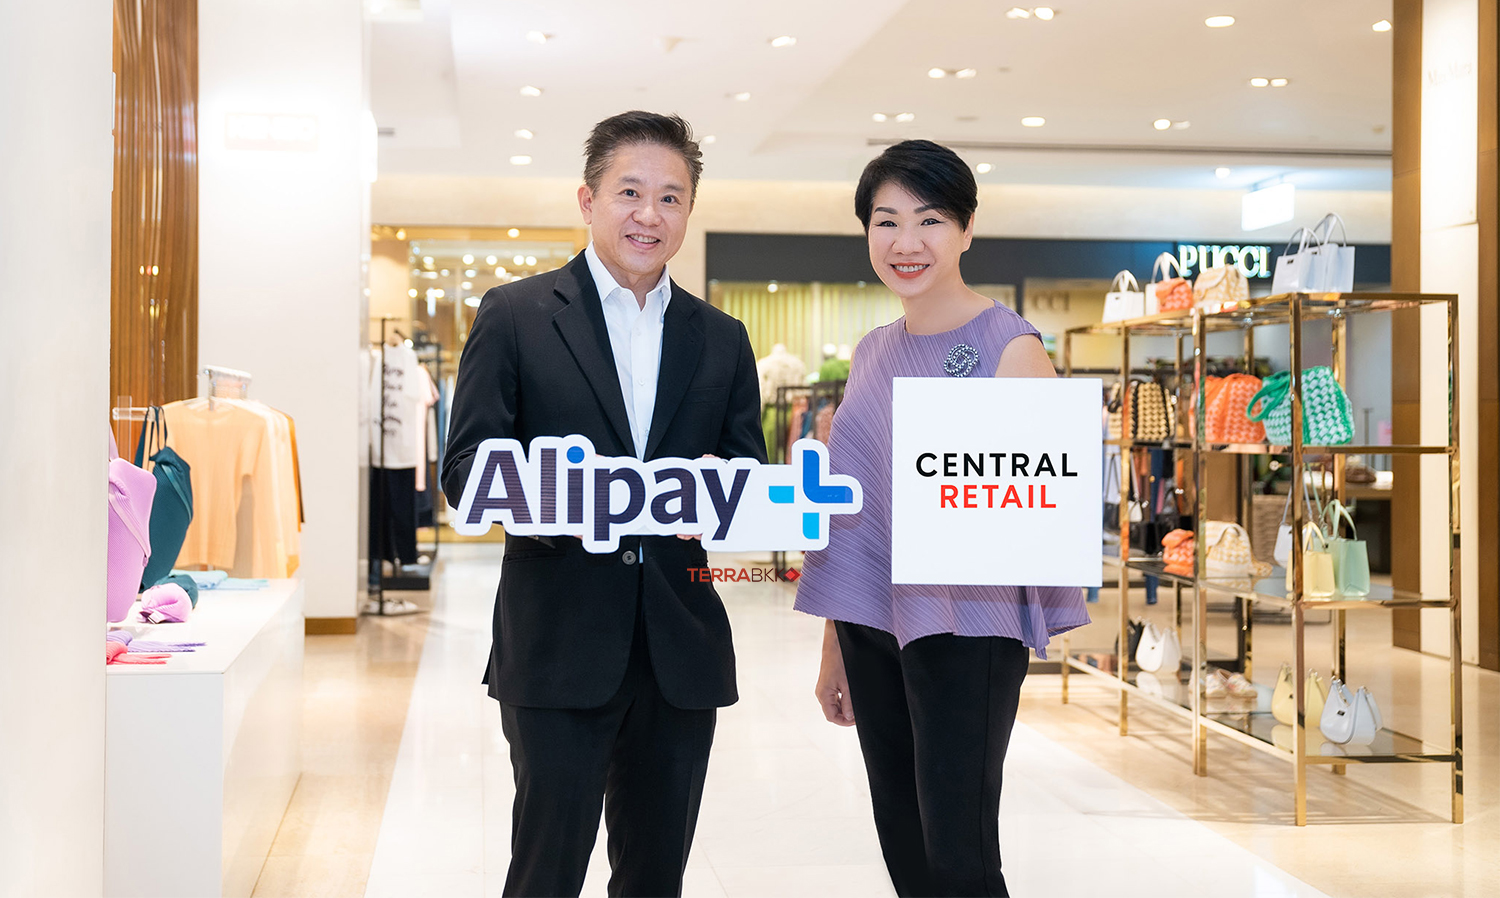 เซ็นทรัล รีเทล เปิดตัว Alipay+ รับเทรนด์นักท่องเที่ยวเอเชียพุ่ง บริการโอนเงินต่างชาติผ่านร้านค้าในเครือ 3,000 จุดทั่วประเทศ 